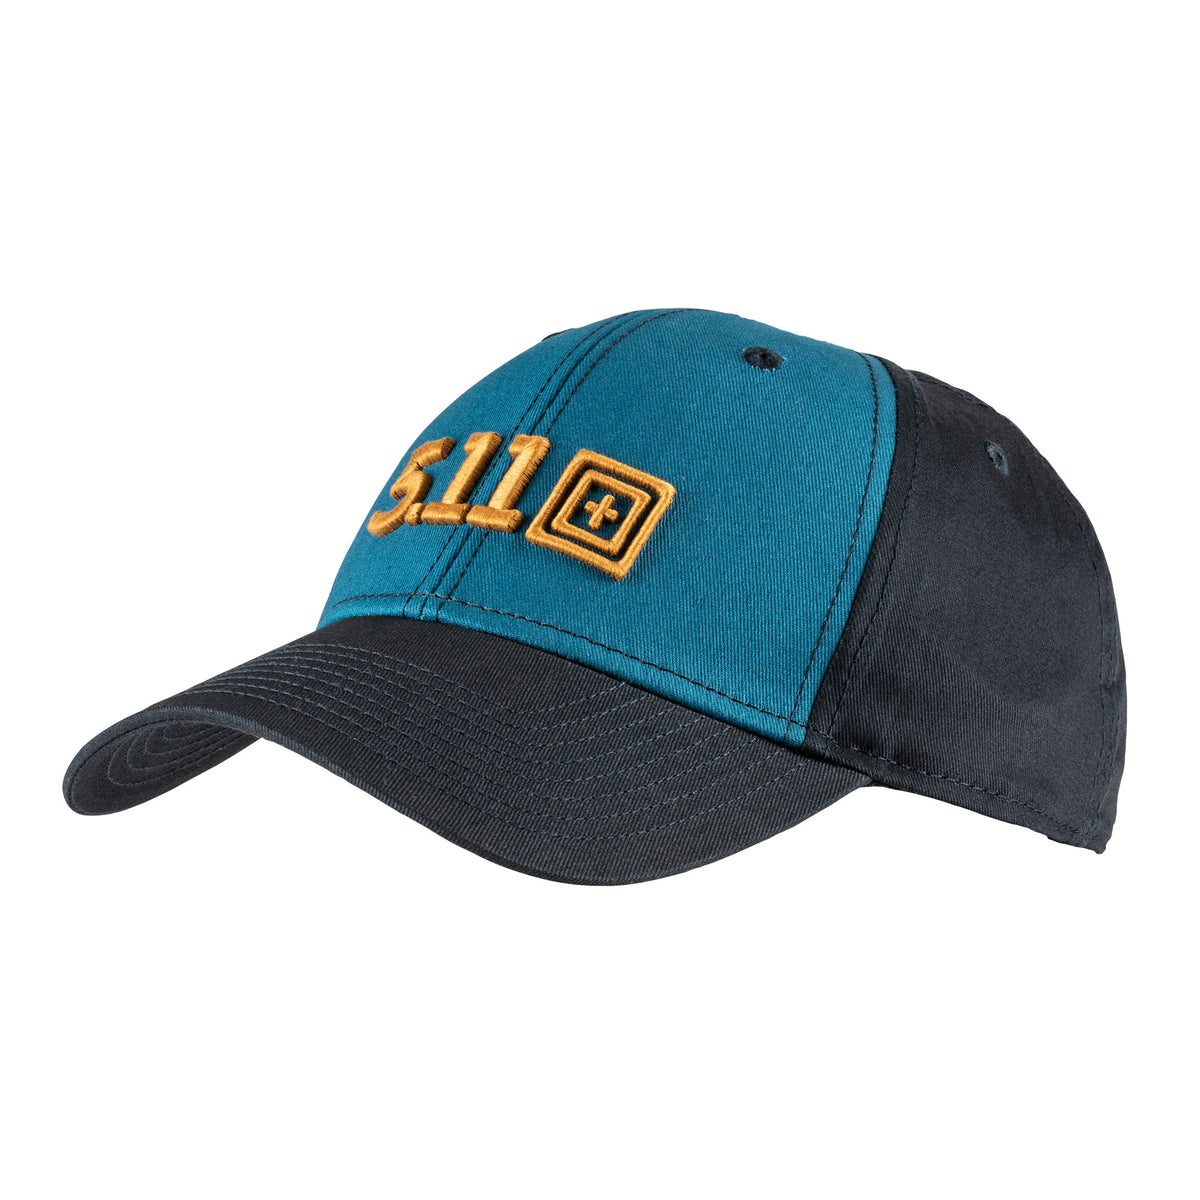 Cappello 5.11 con logo ricamato in 3d giallo su sfondo azzurro - modello Legacy Scout